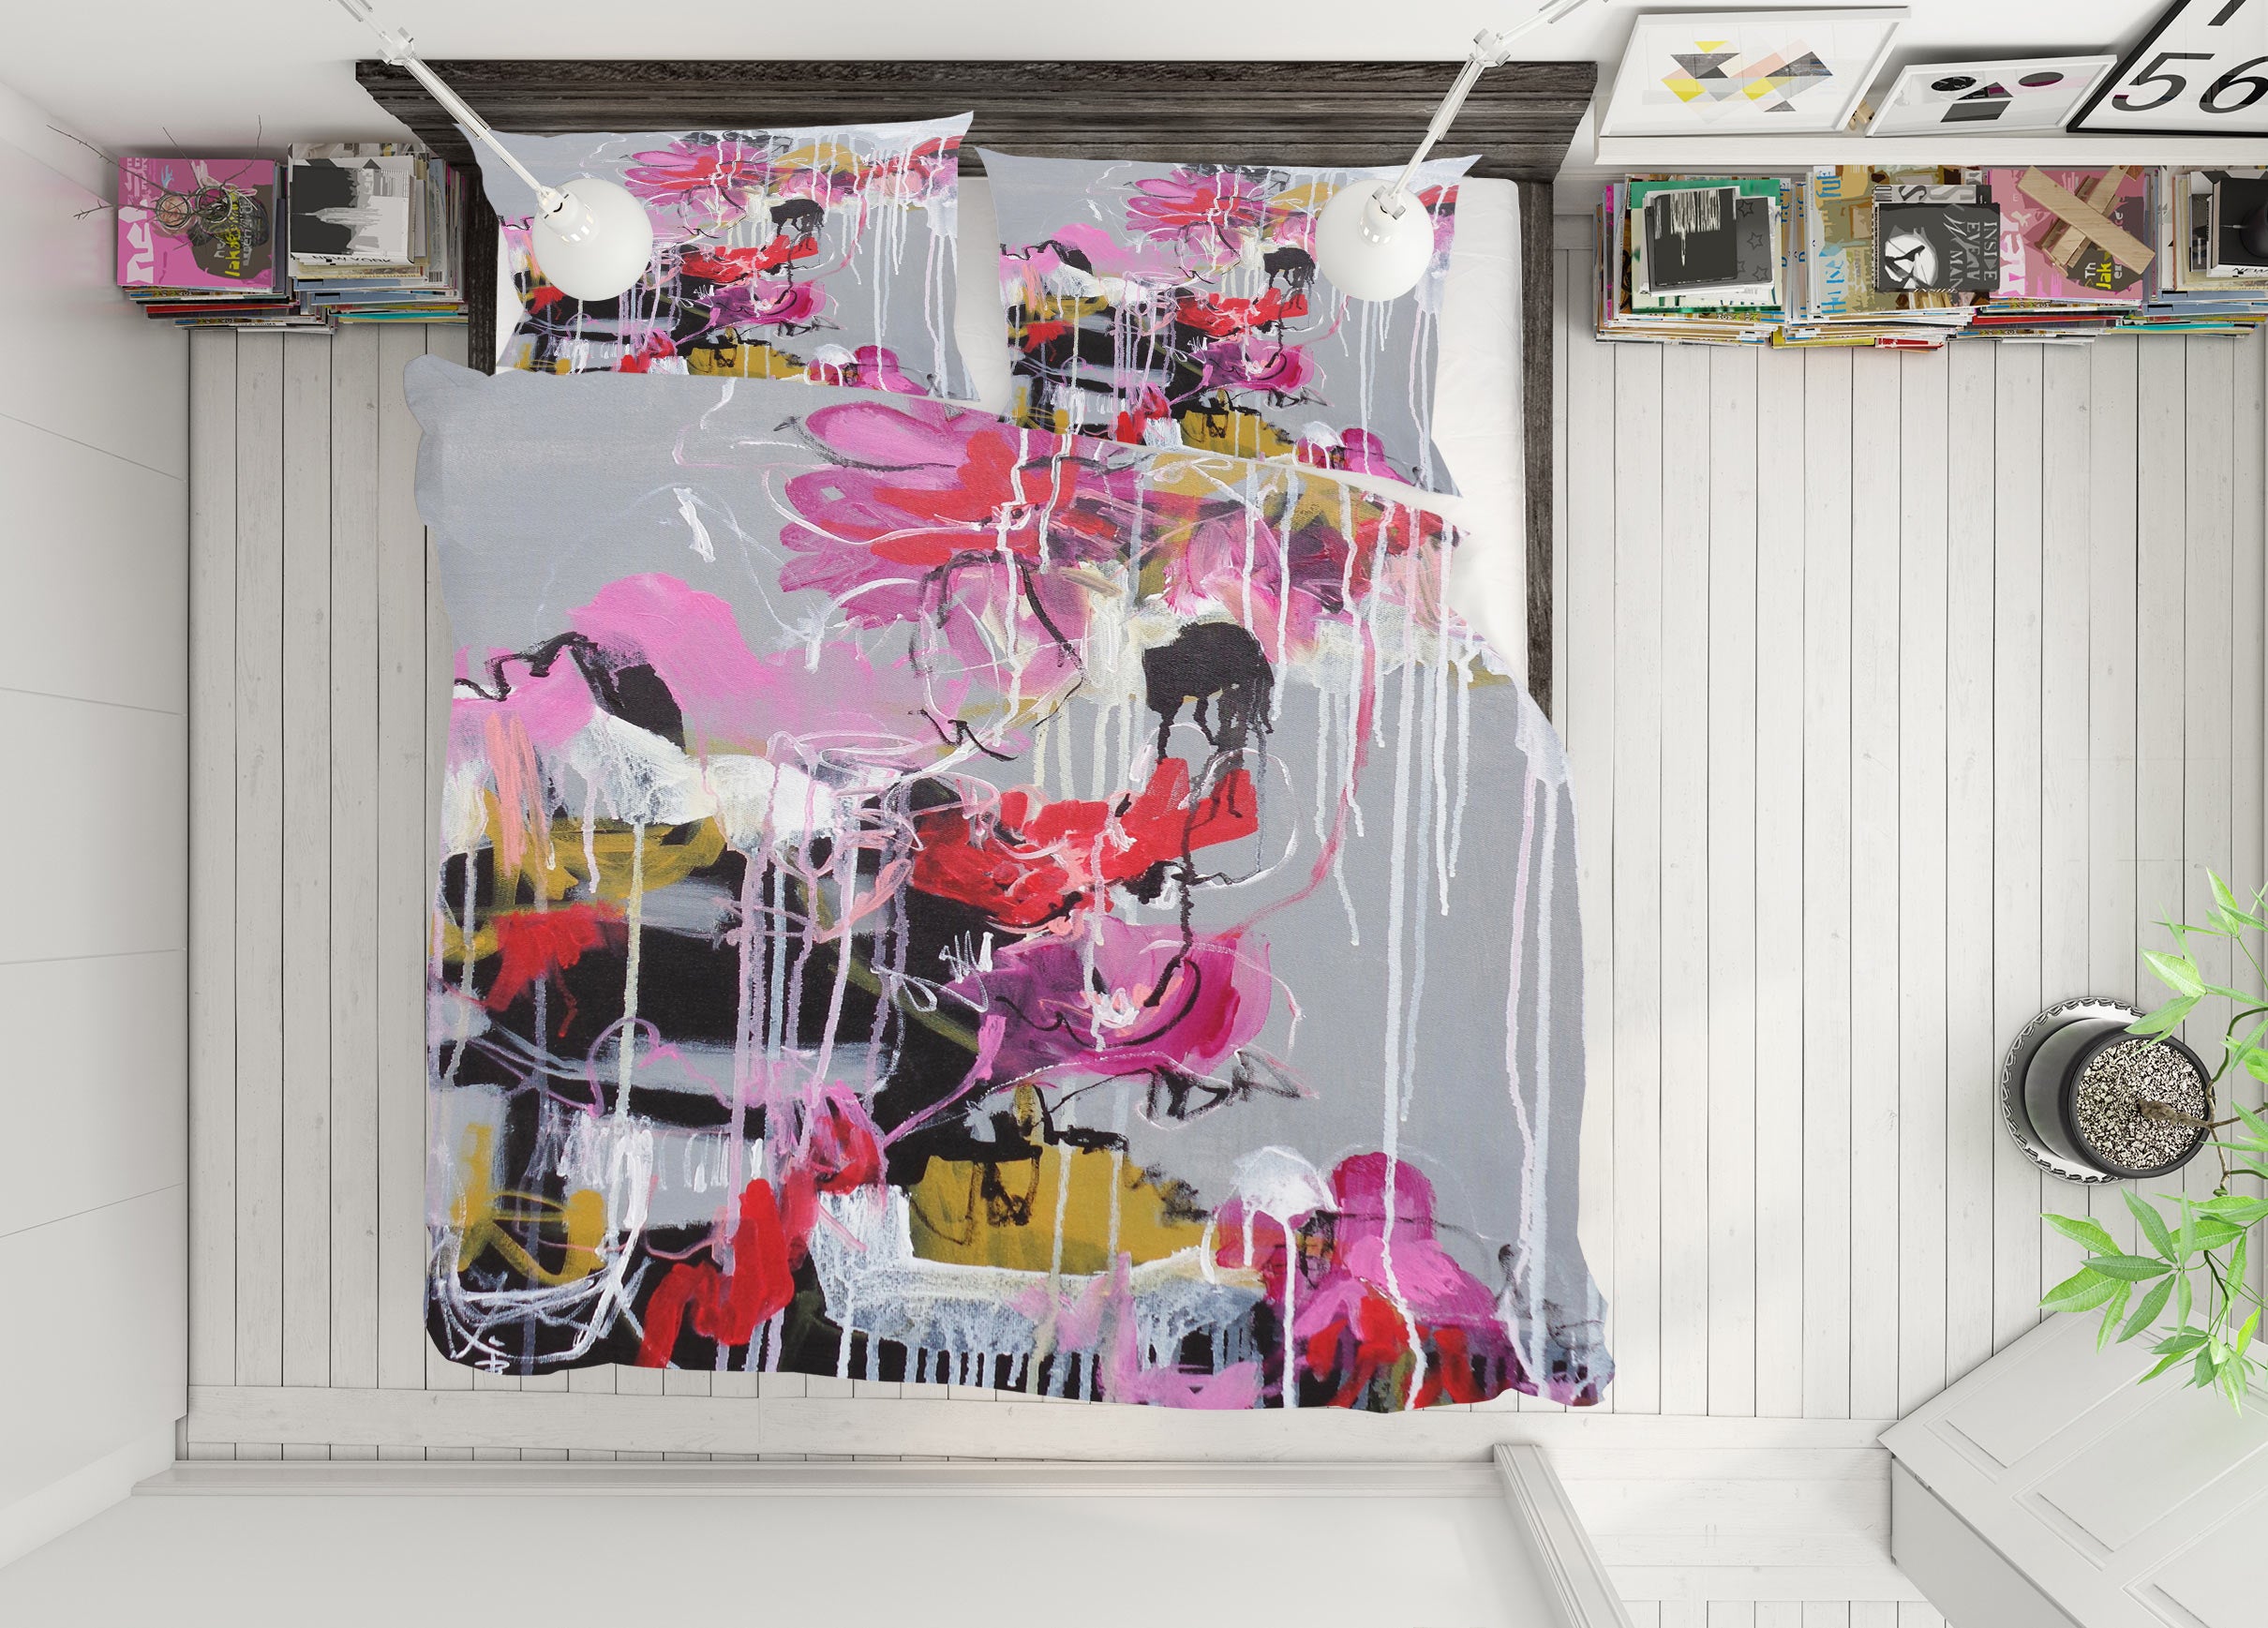 3D Flower Art 1234 Misako Chida Bedding Bed Pillowcases Quilt Cover Duvet Cover